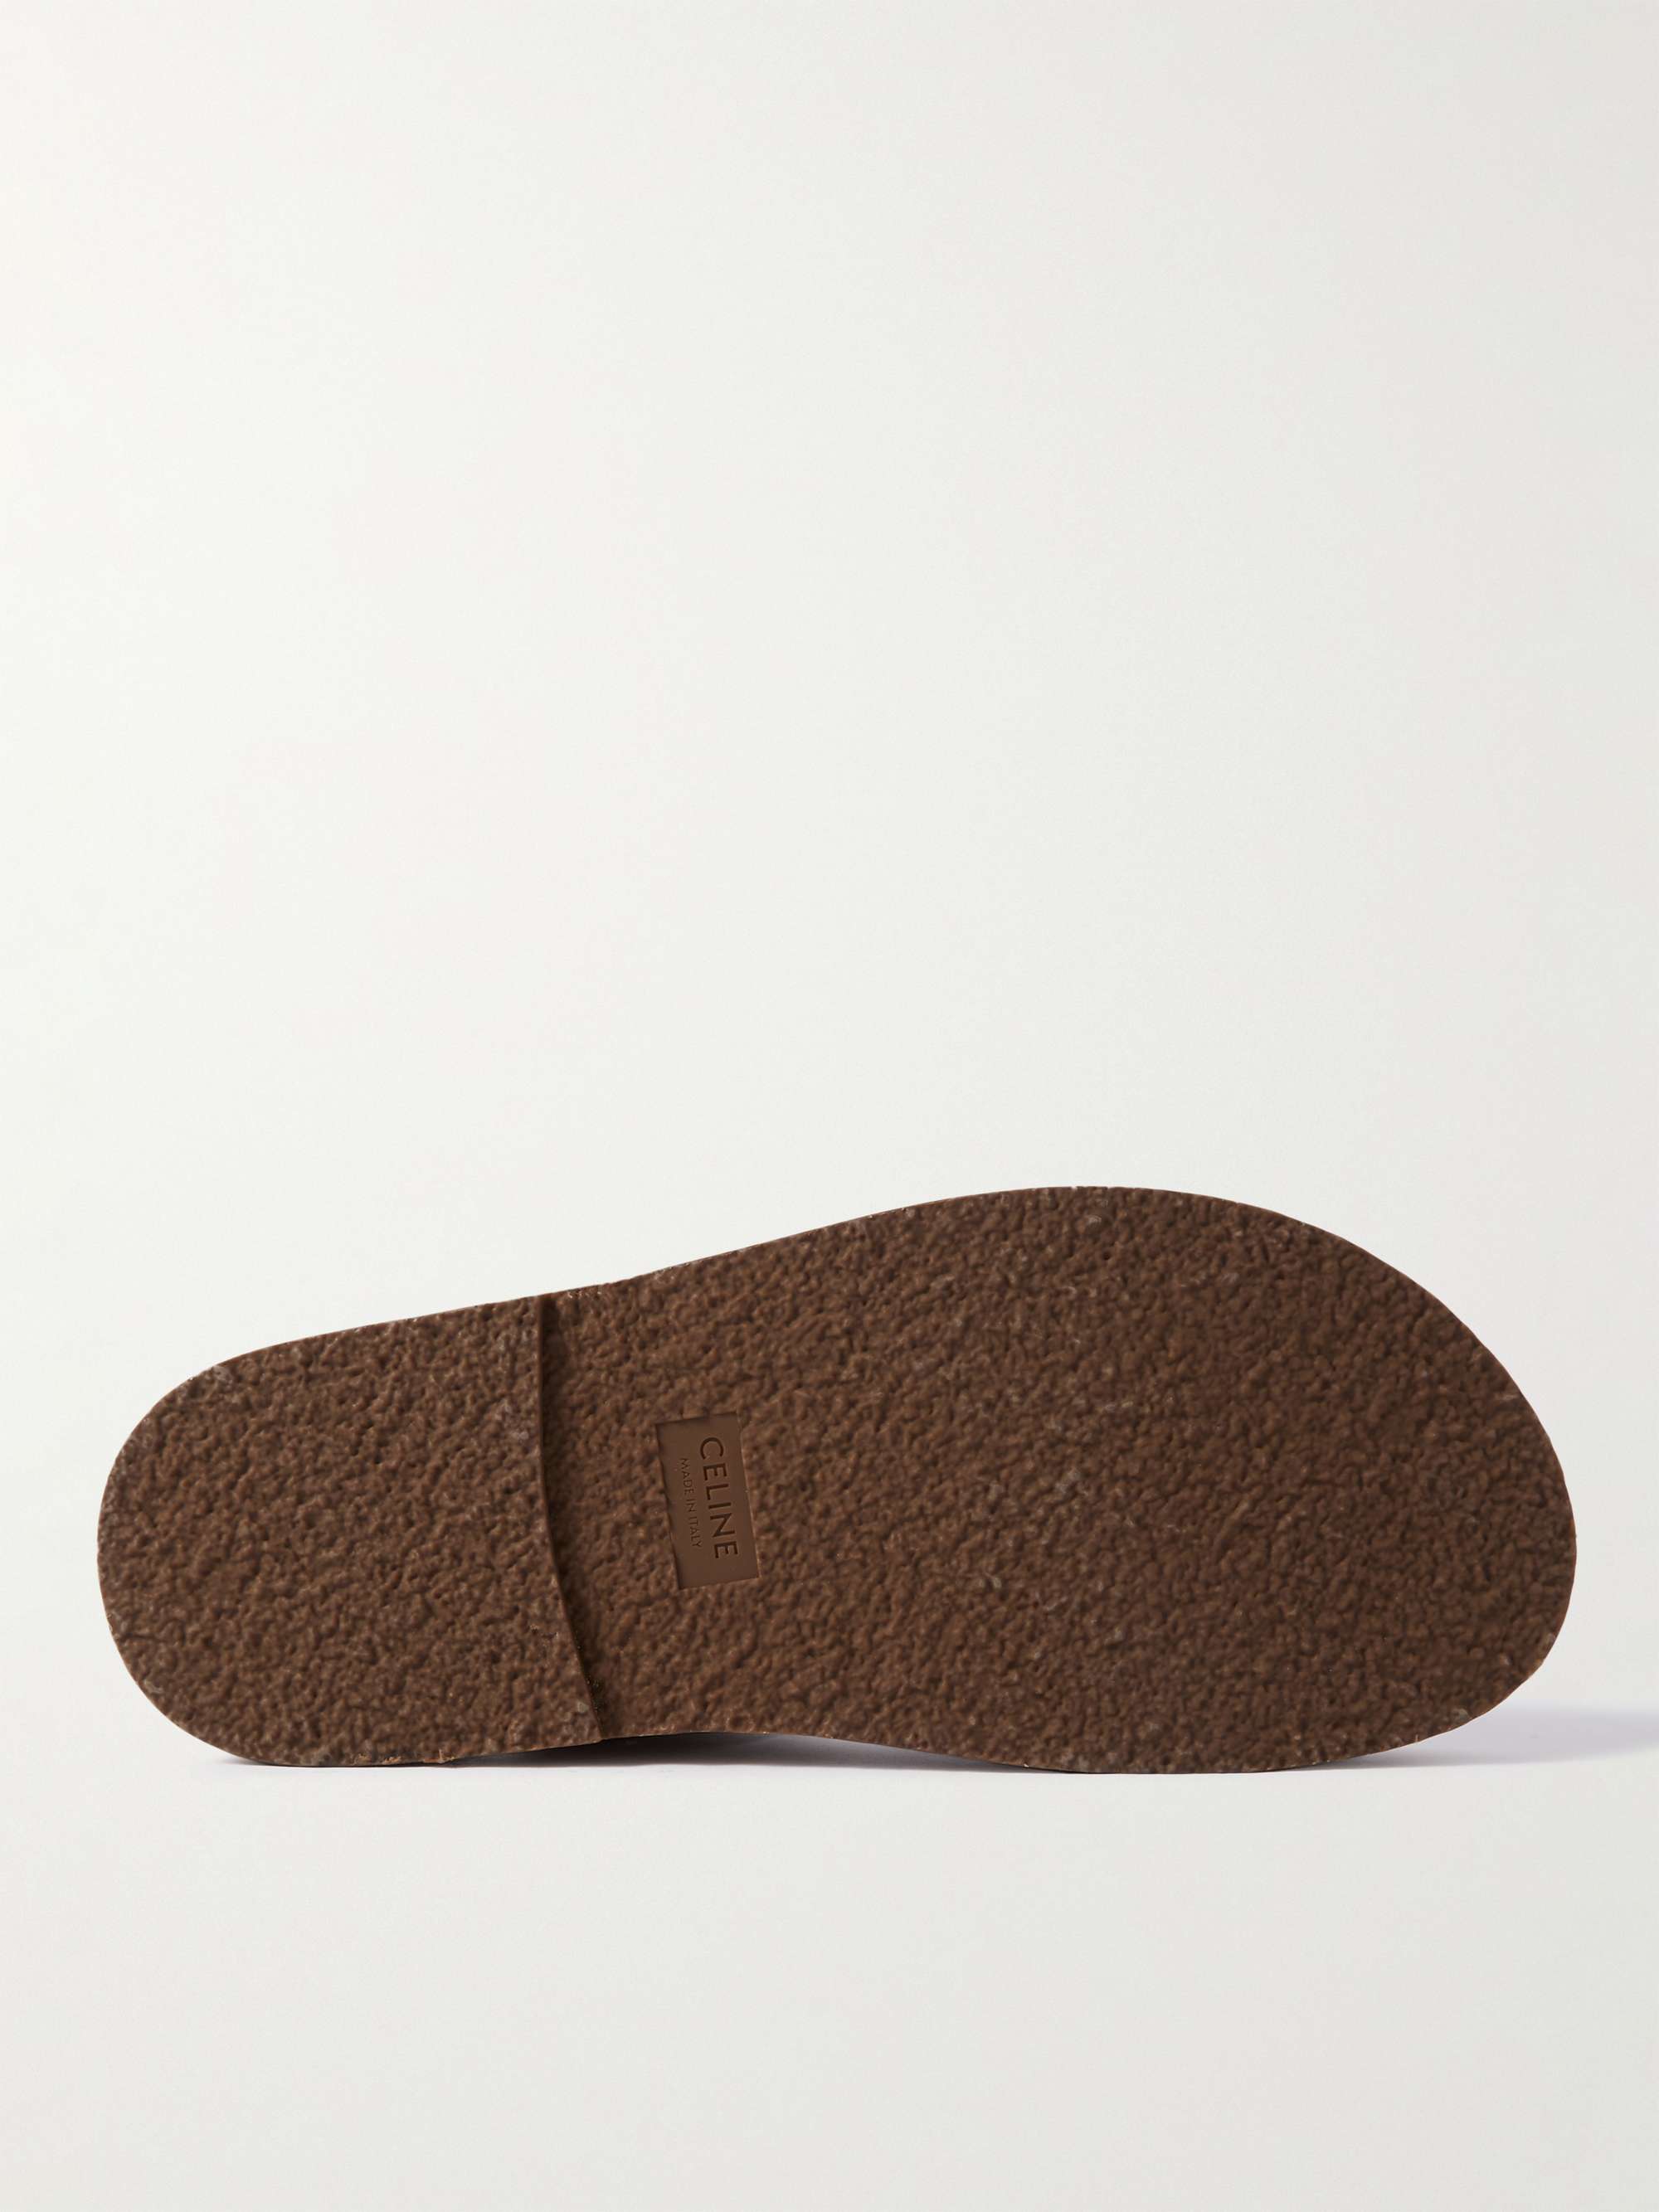 CELINE HOMME Leather Sandals for Men | MR PORTER